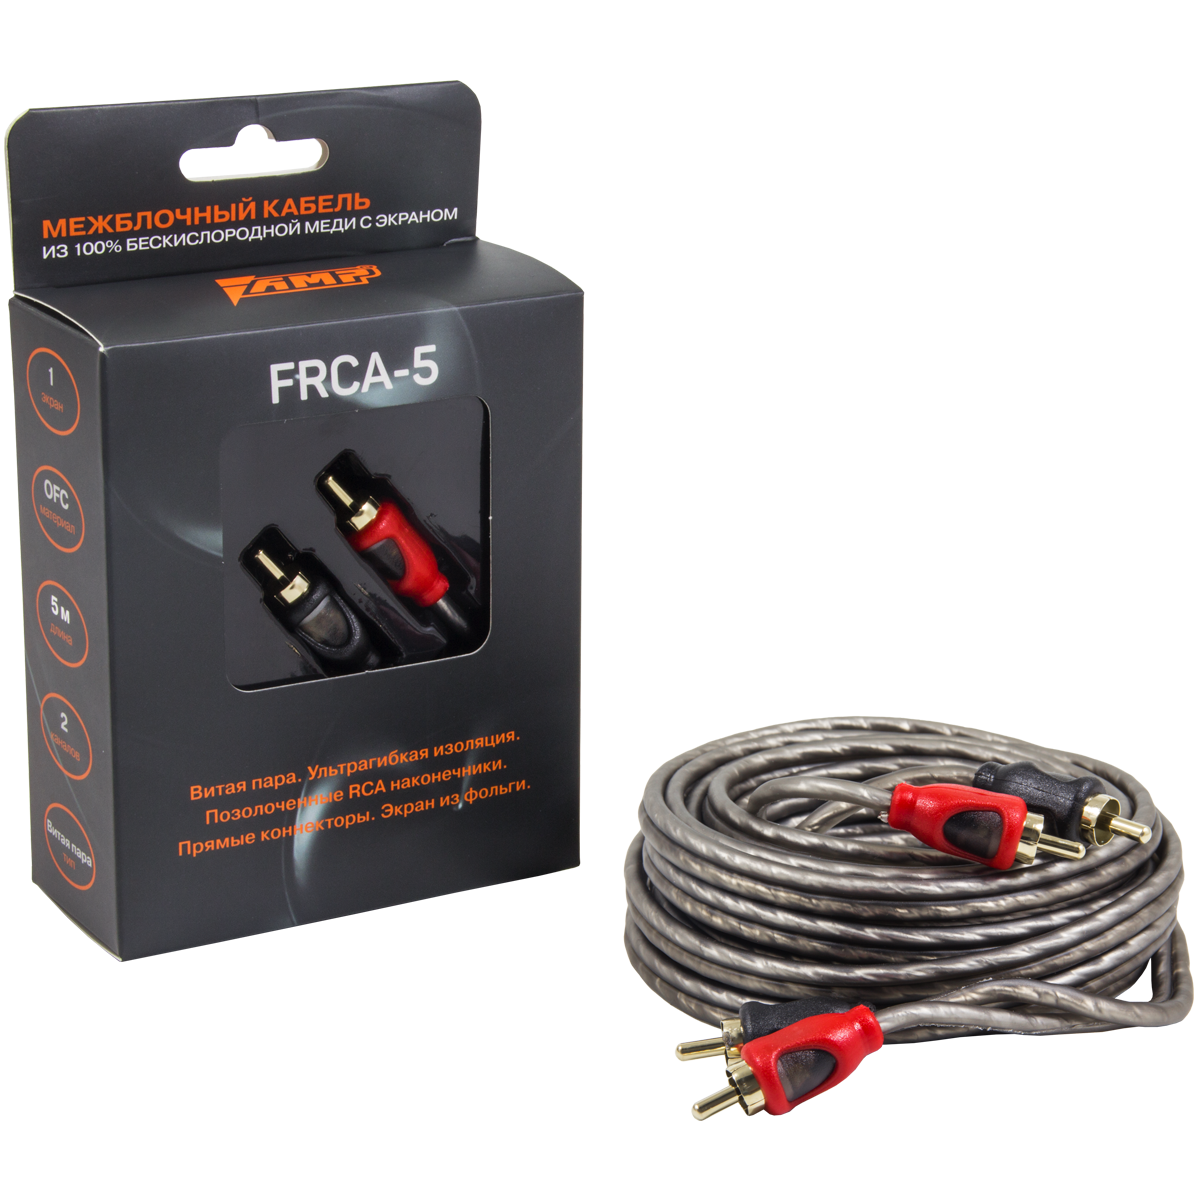 Провод соединительный AMP FRCA-5 Межблочный кабель-медь+экран (5м) купить в интернет магазине AMPGROUP.  Провод соединительный AMP FRCA-5 Межблочный кабель-медь+экран (5м)   цены, большой каталог, новинки.
